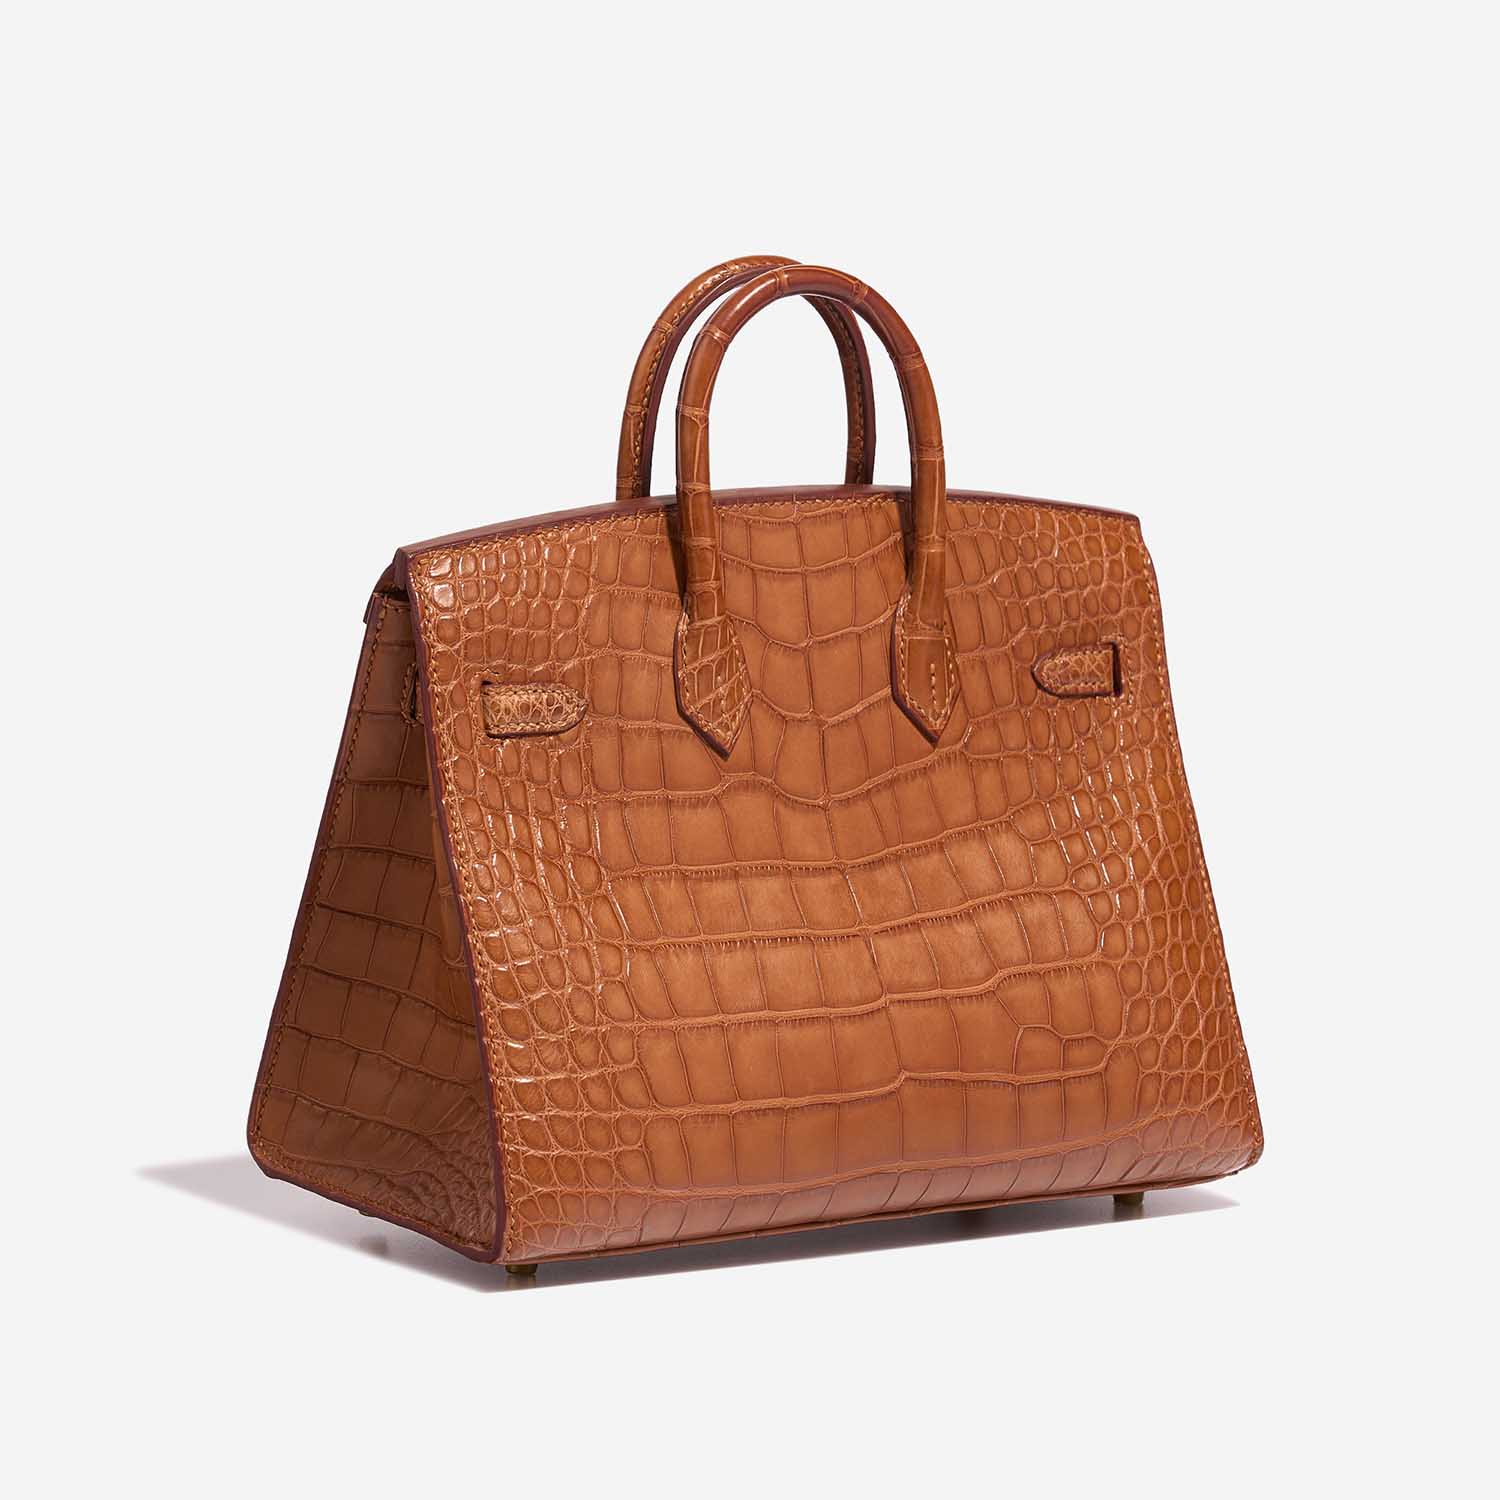 Hermès Birkin 20 Gold Side Back | Verkaufen Sie Ihre Designer-Tasche auf Saclab.com